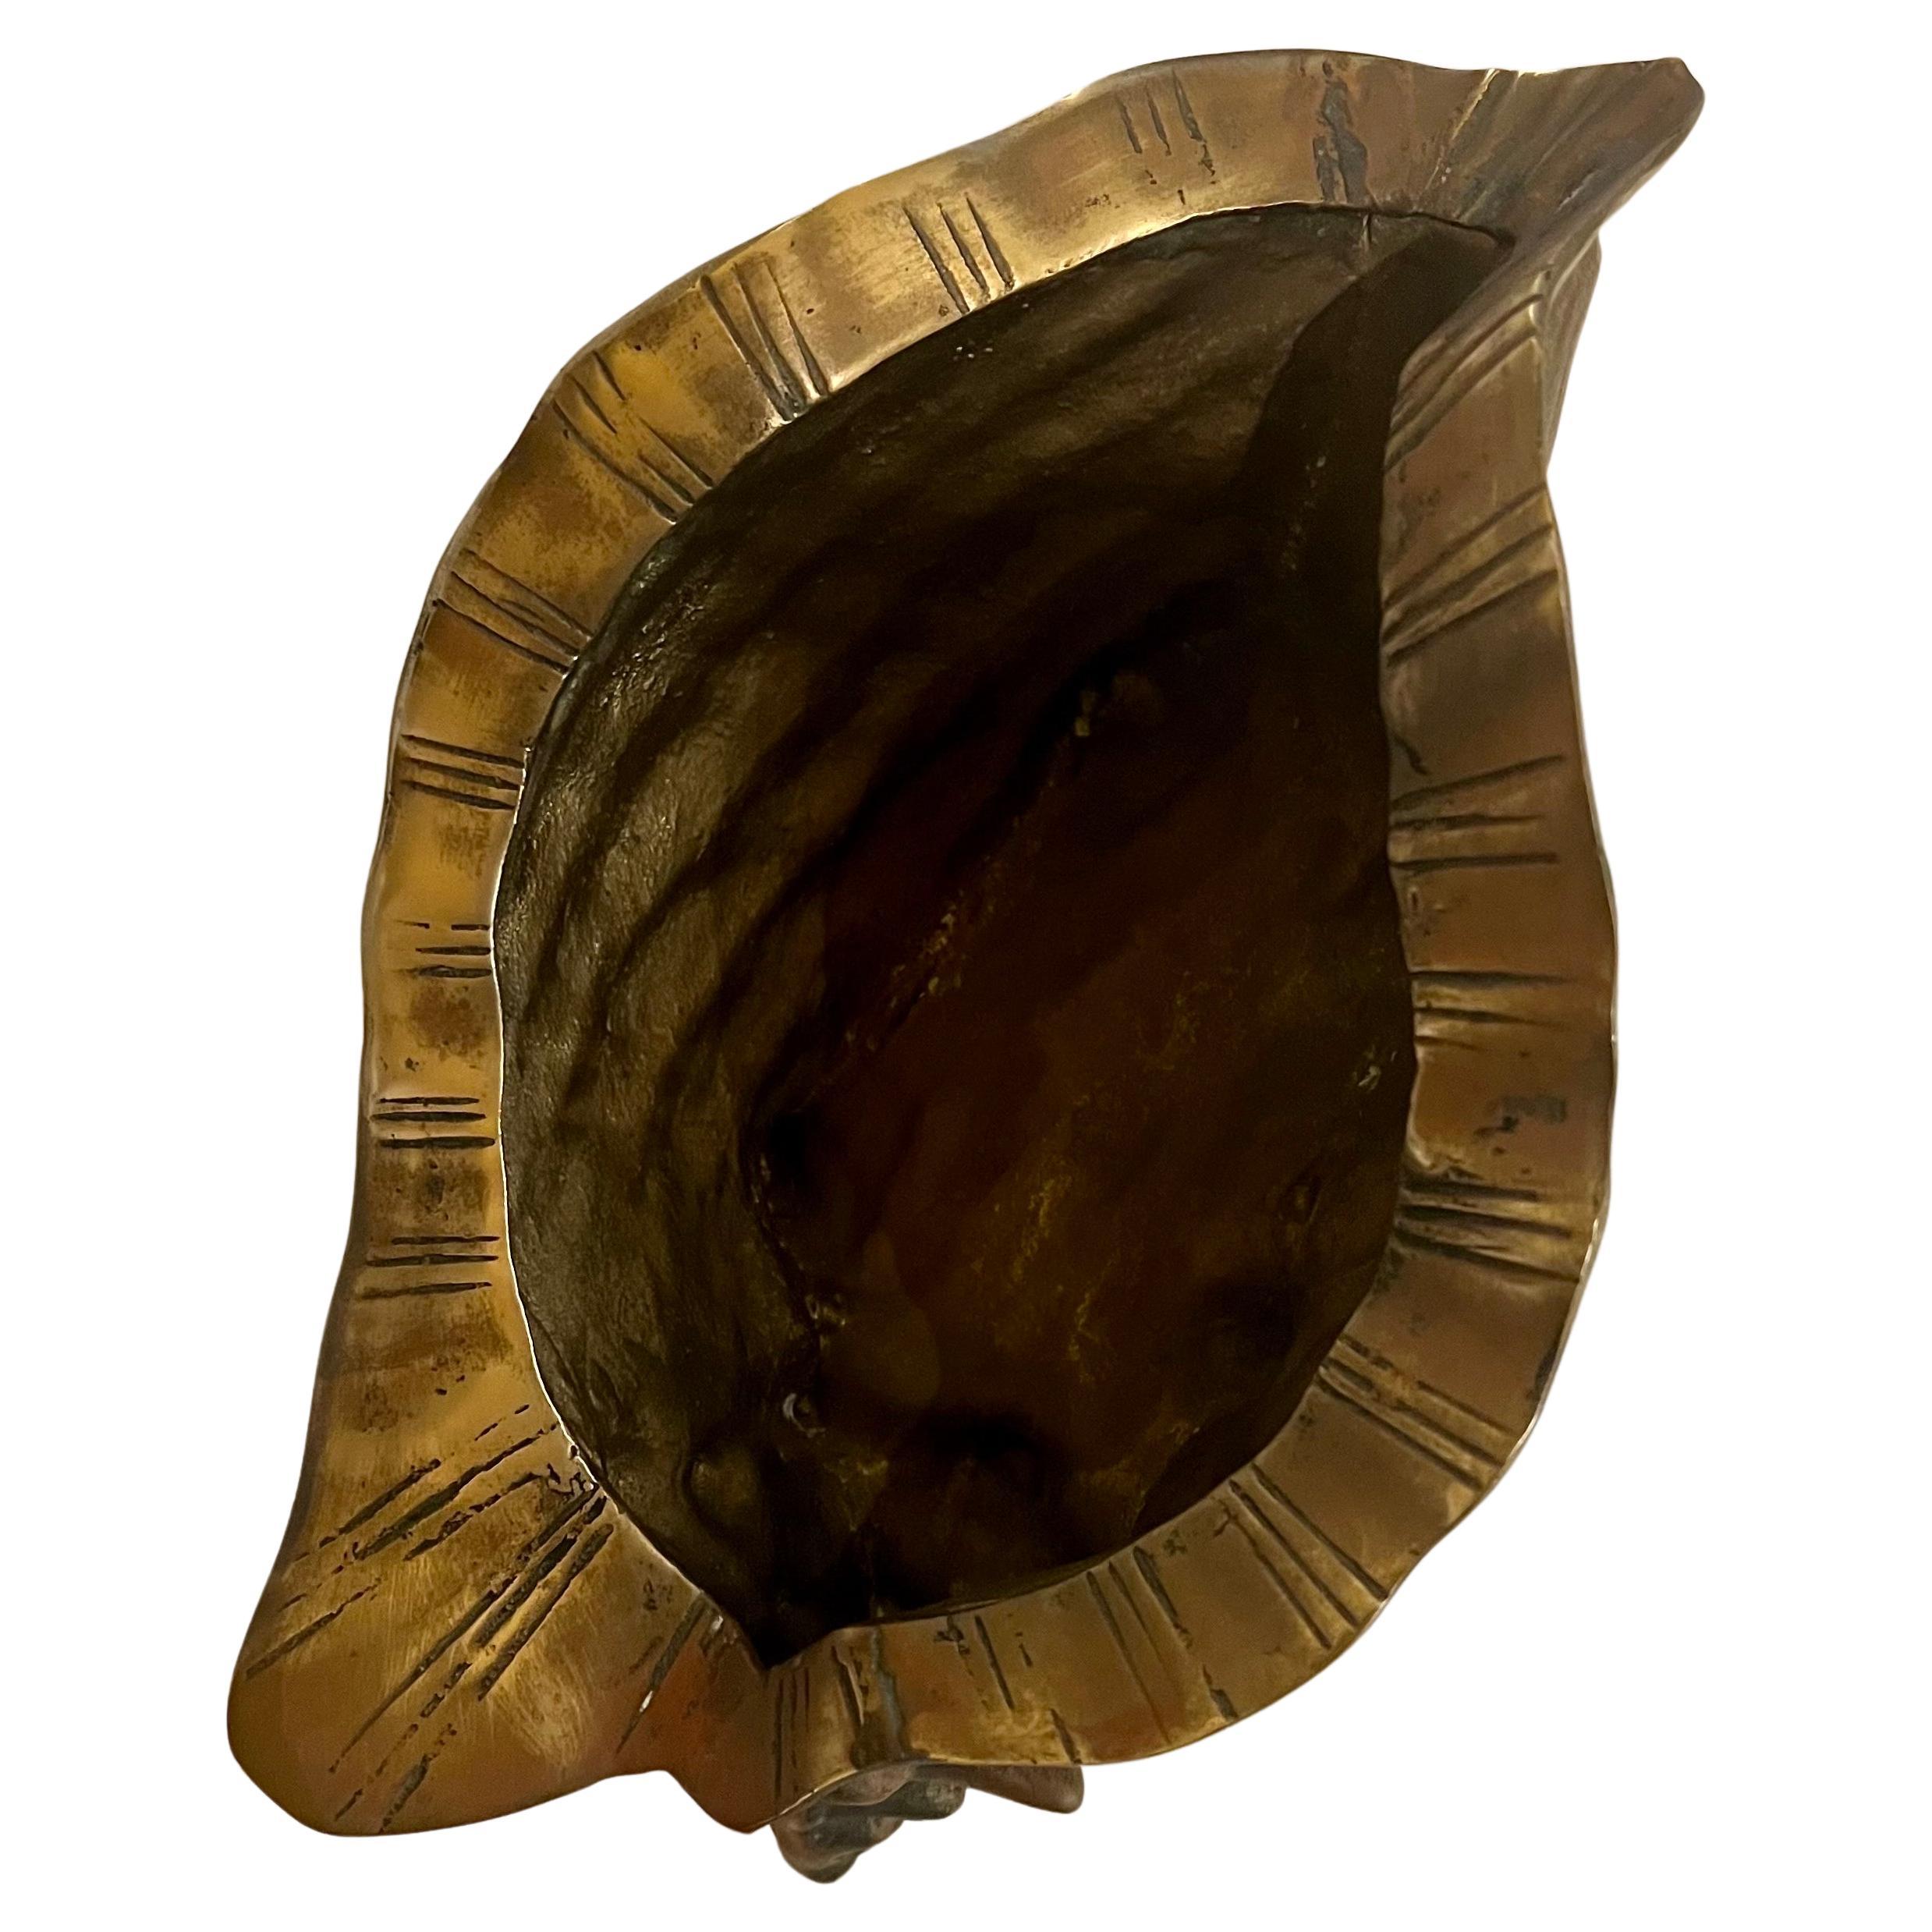 Schöne dekorative solide patiniert Messing Muschel, kann als Pflanzgefäß oder fangen sie alle, circa 1970er Jahre schöne Patina, die poliert werden kann verwendet werden.